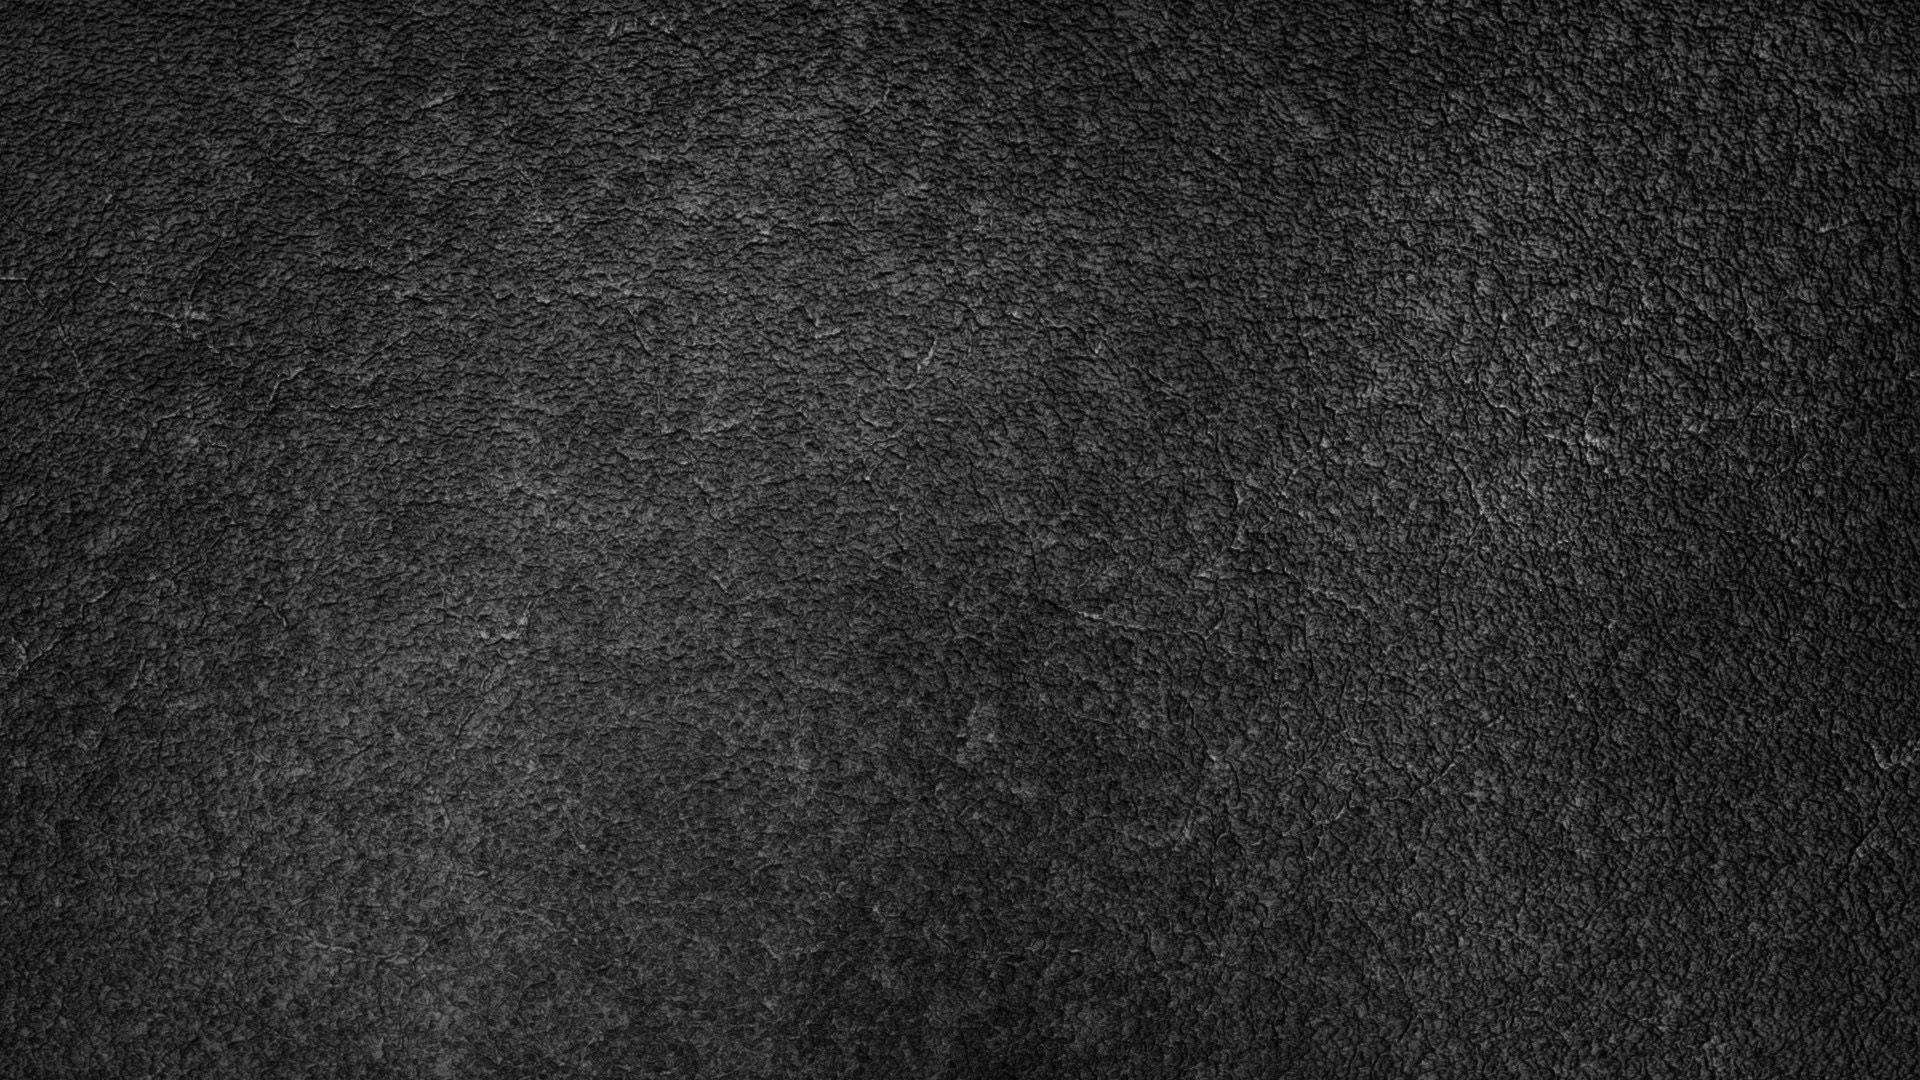 Asphalt Texture In Dark Gray Concrete Background